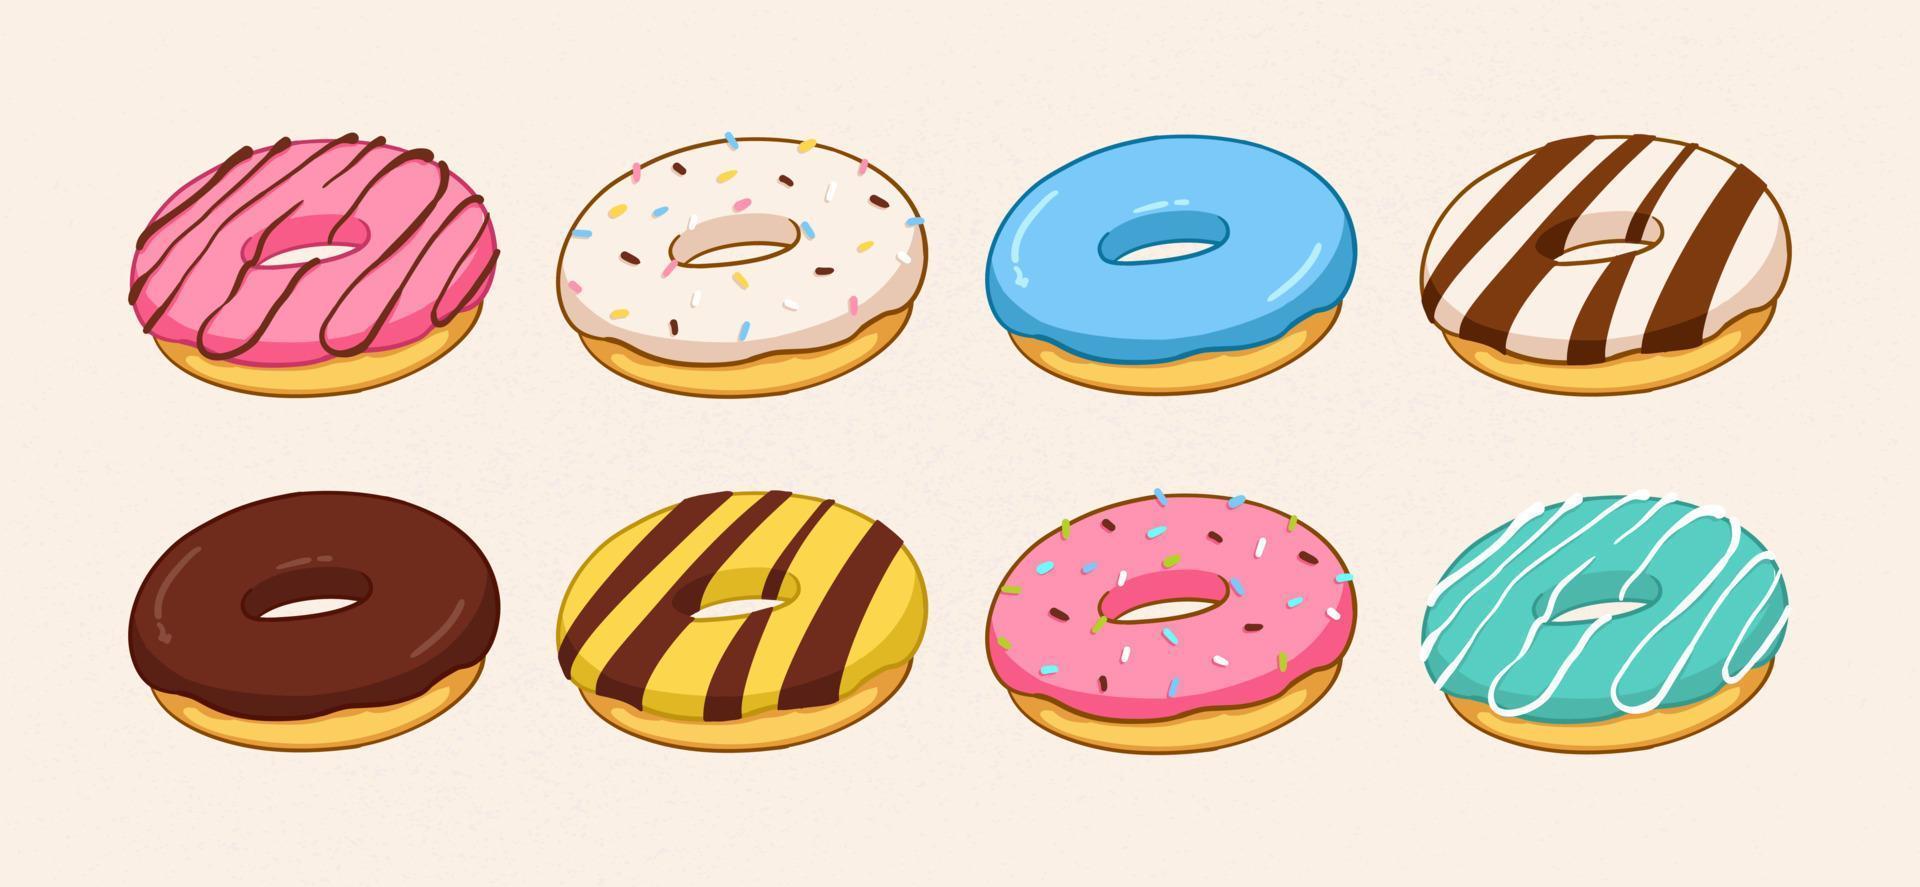 conjunto de rosquillas de colores de dibujos animados aislado sobre fondo blanco. vista lateral. colección de donuts en glaseado para diseño de menú, decoración de café, caja de entrega. ilustración vectorial en estilo plano vector